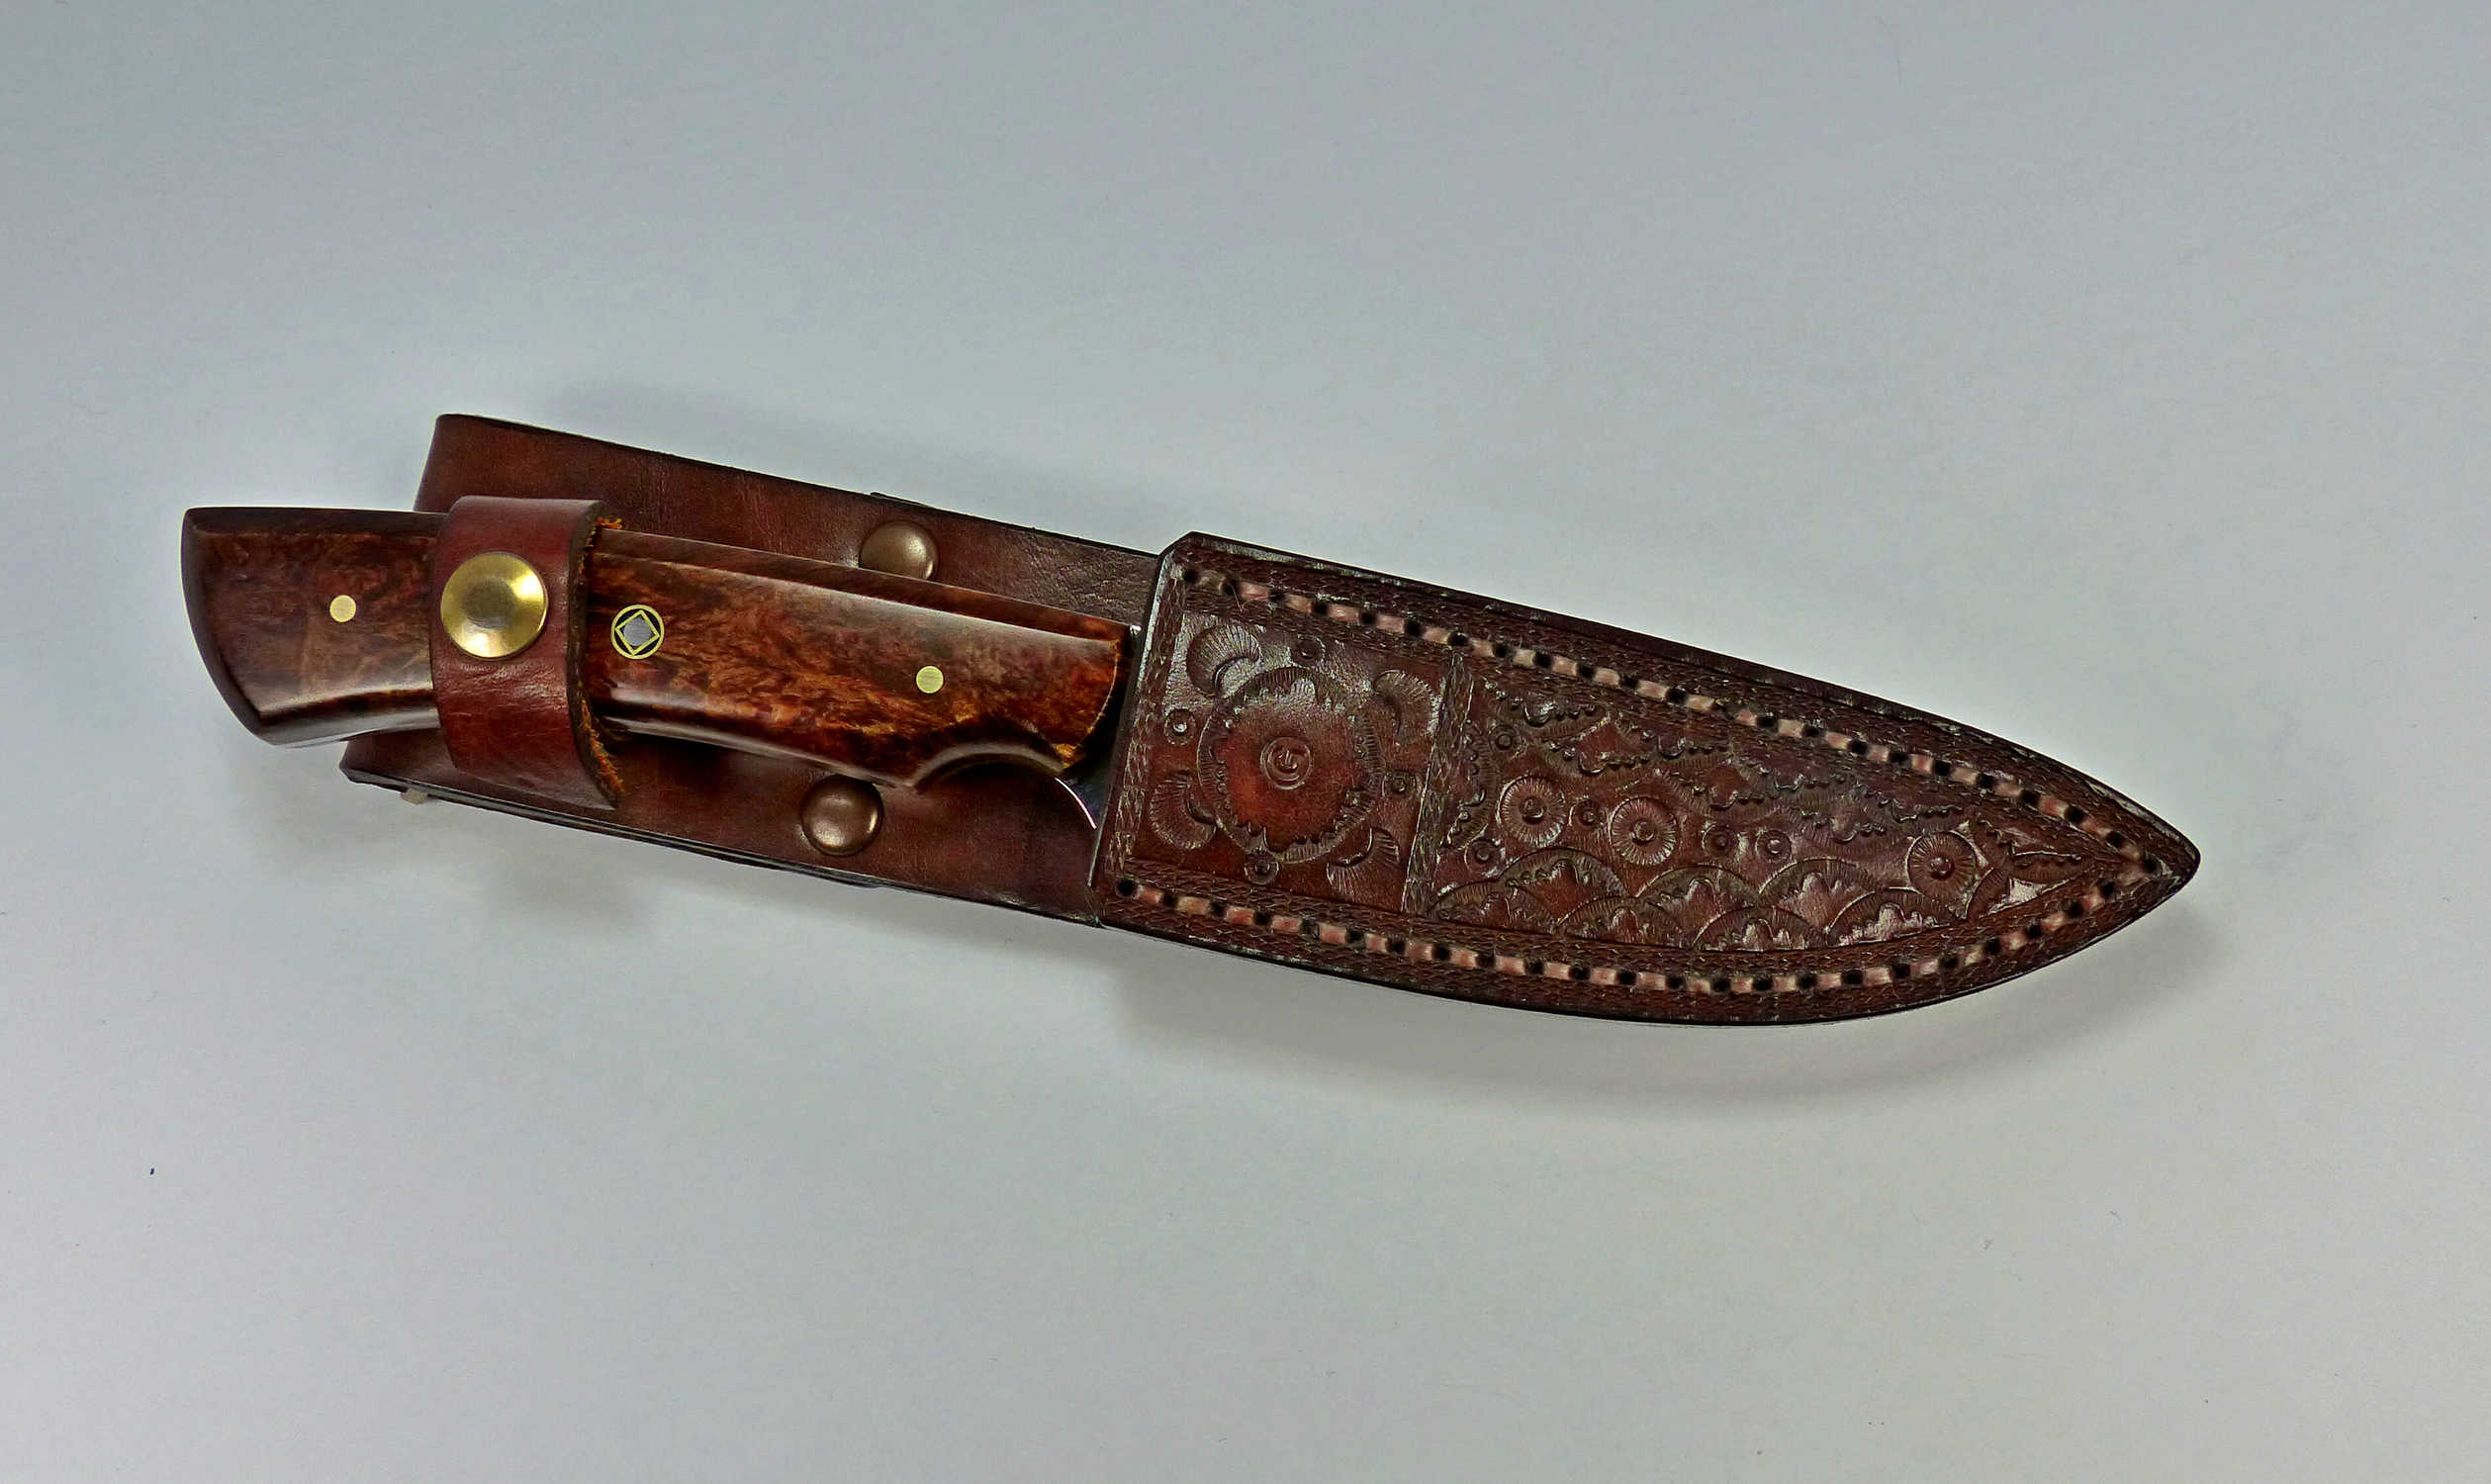 Beautiful walnut burl hunting knife and matching leather sheath